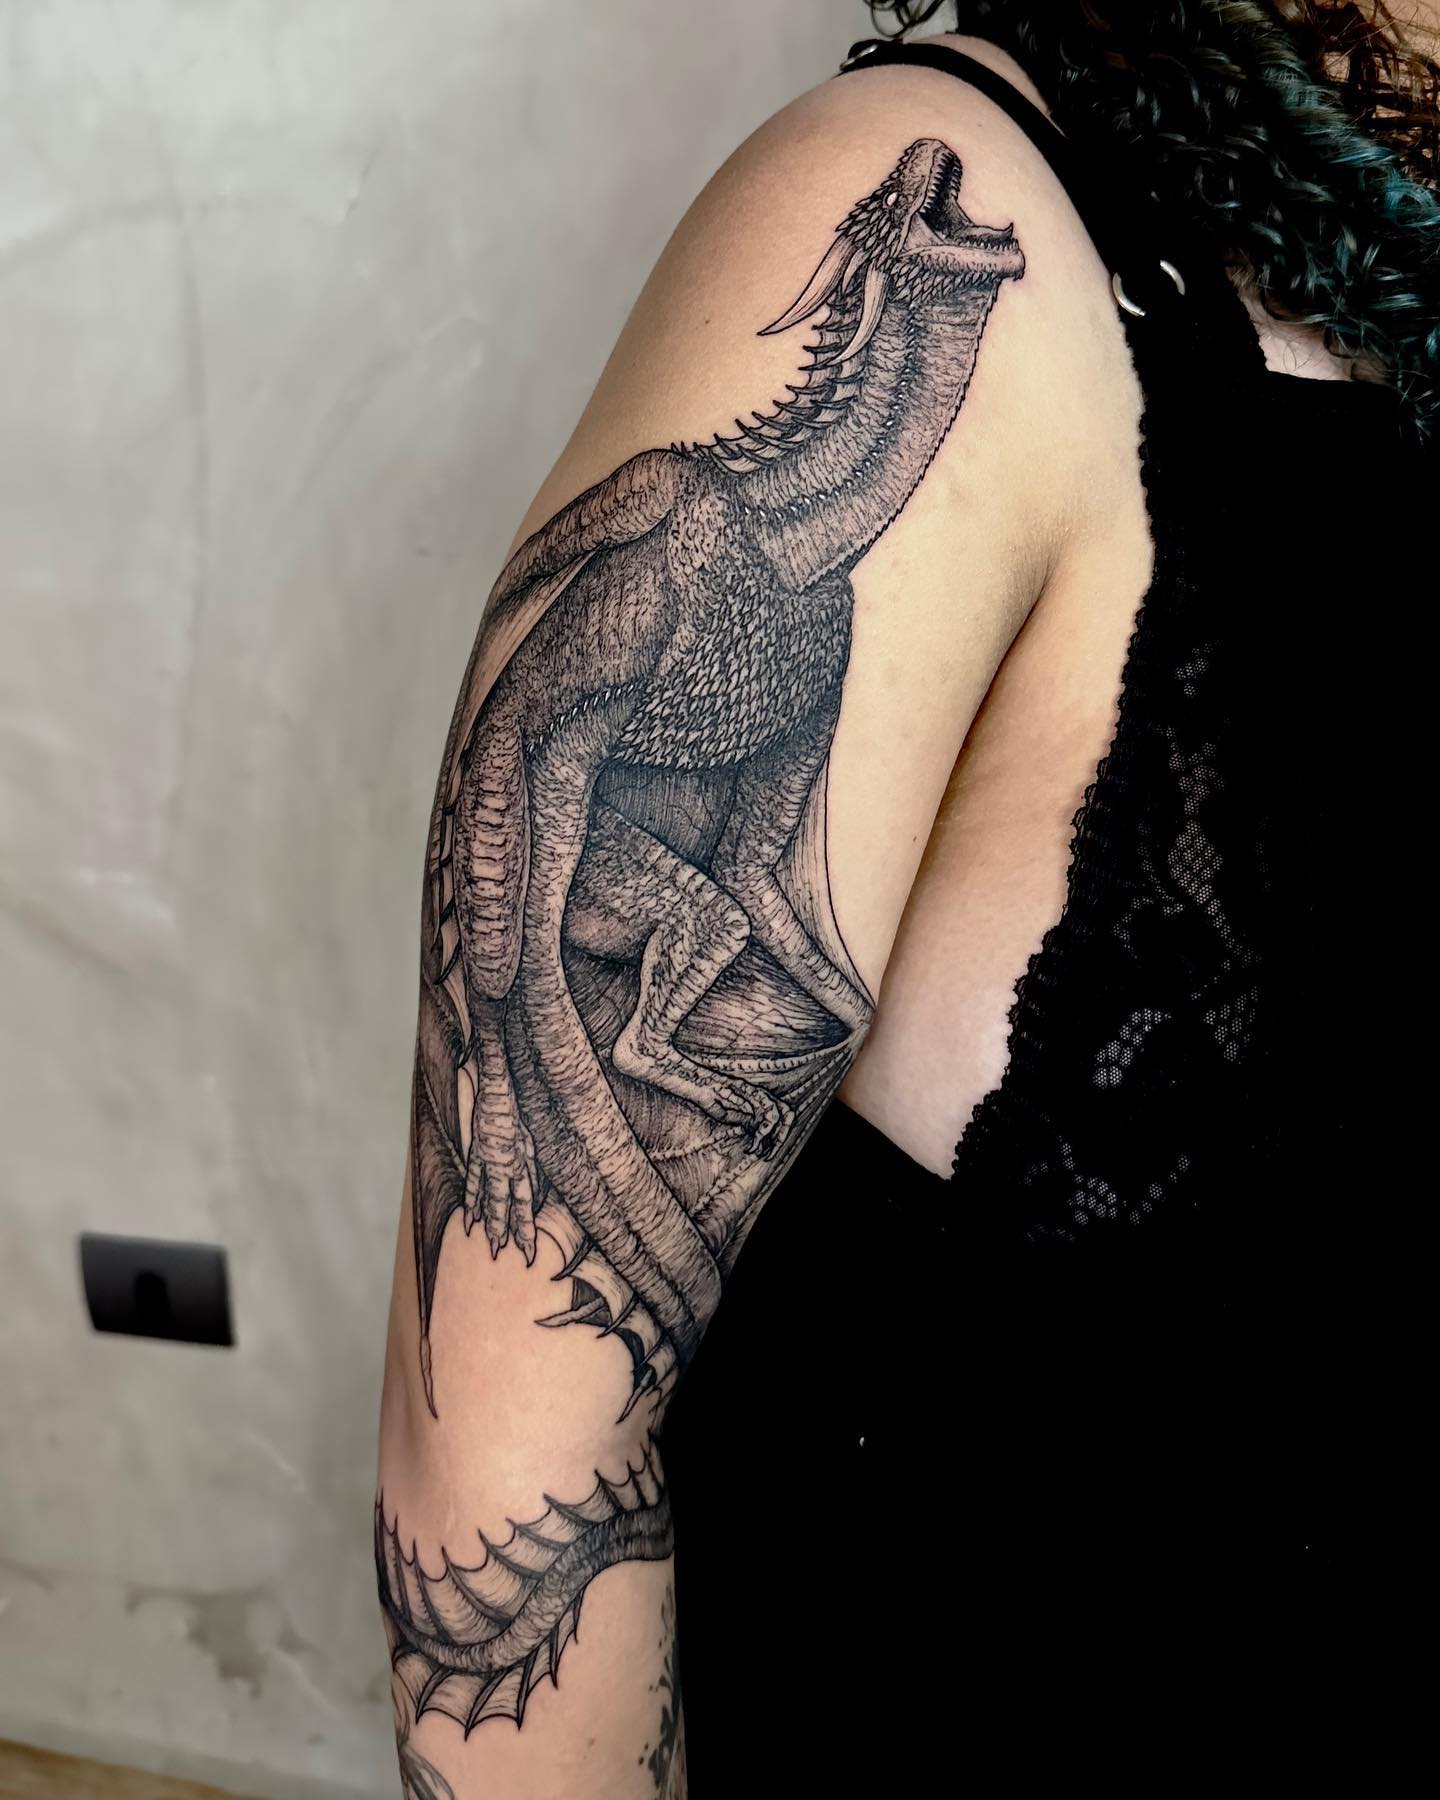 Realistic 3D Dragon Tattoo on Arm